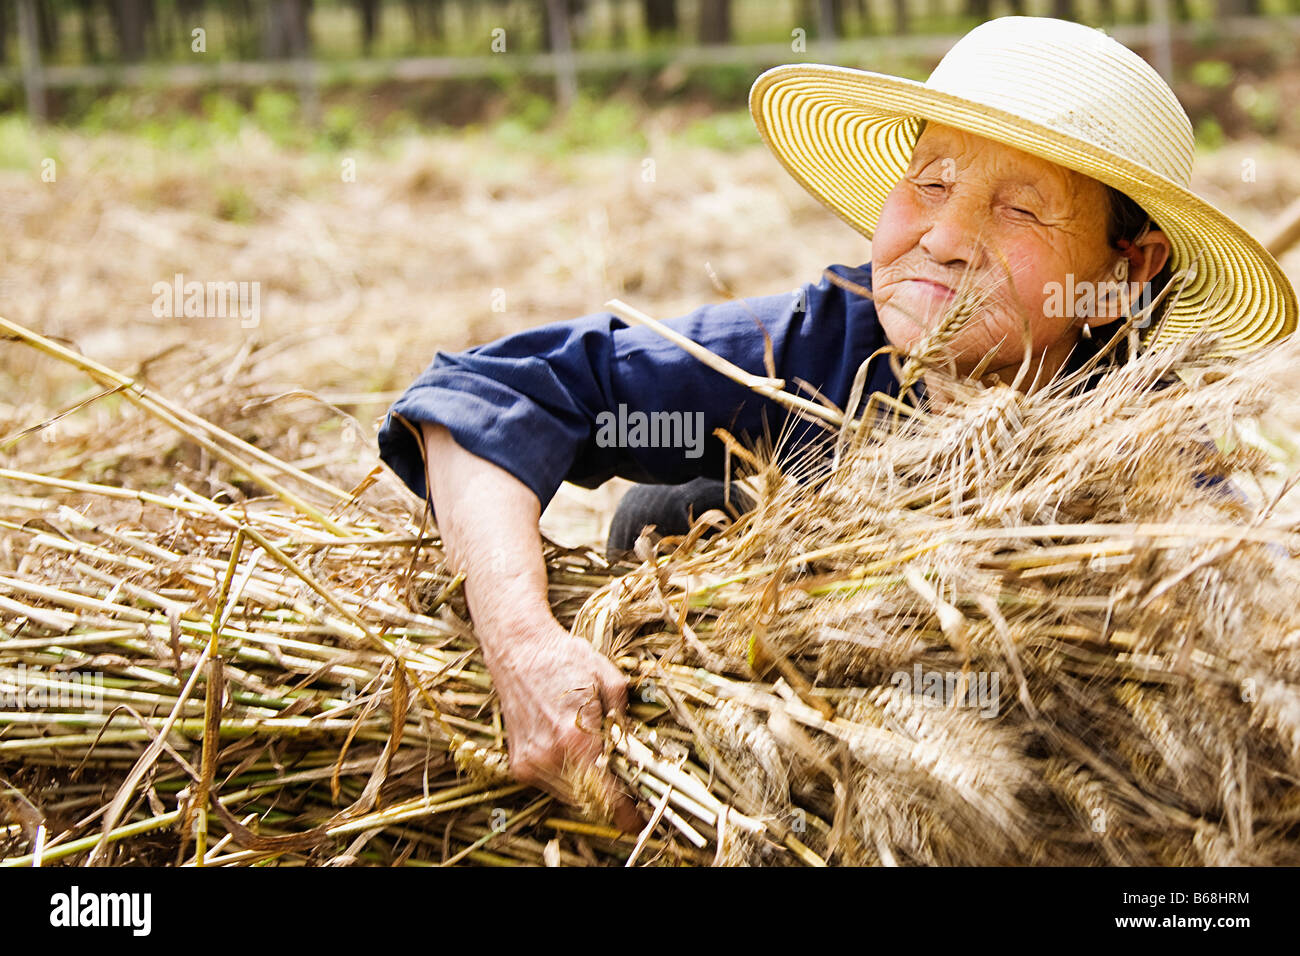 Landwirt sammeln Bündel von Weizen Stengel, Zhigou, Provinz Shandong, China Stockfoto